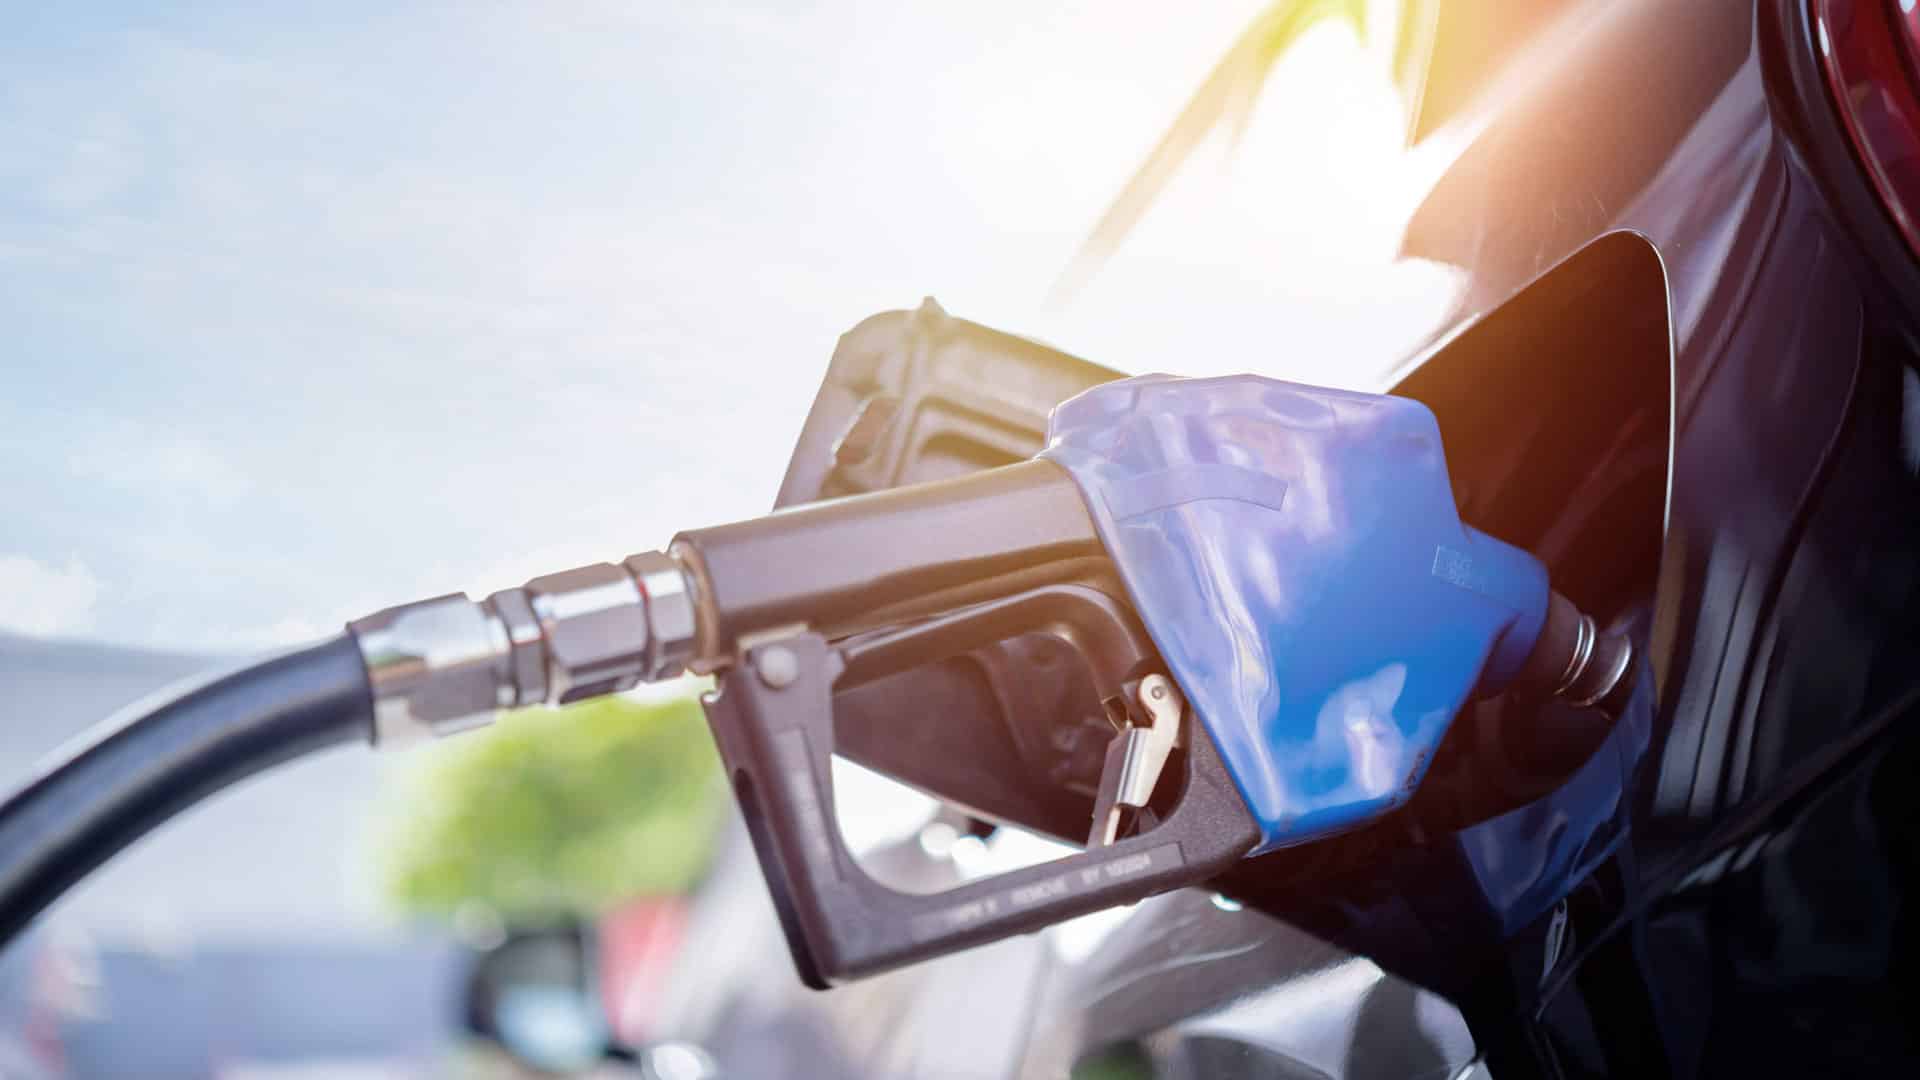 Blue handle ethanol gas pump in car